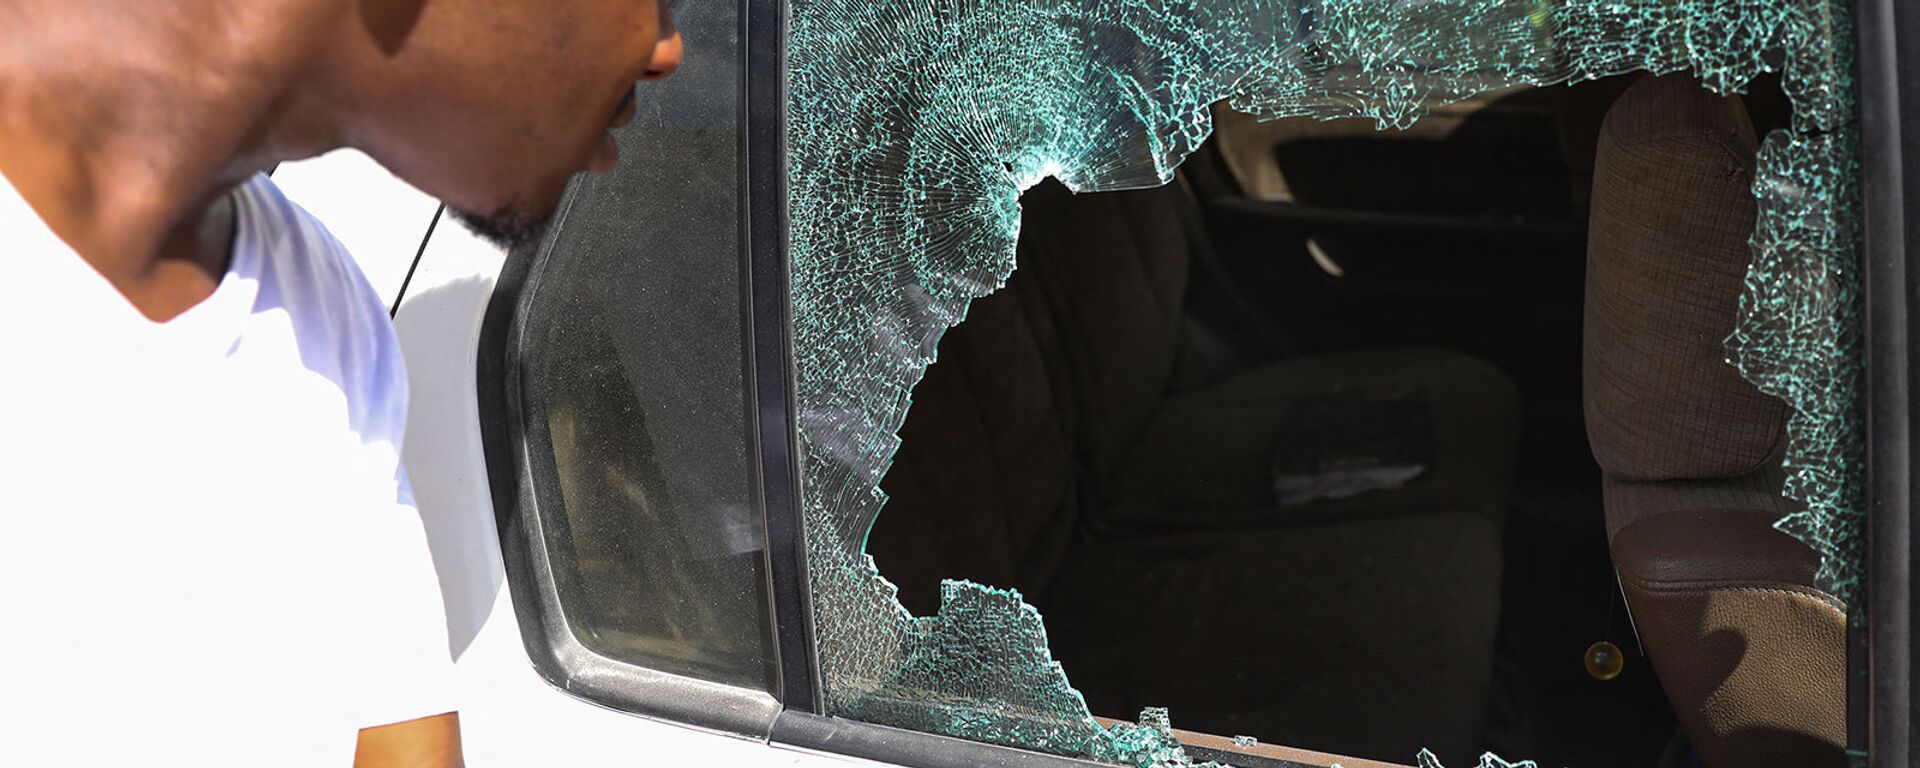 Мужчина смотрит на пулевые отверстия в машине возле президентской резиденции в Порт-о-Пренсе (7 июля 2021). Гаити - Sputnik Армения, 1920, 09.07.2021